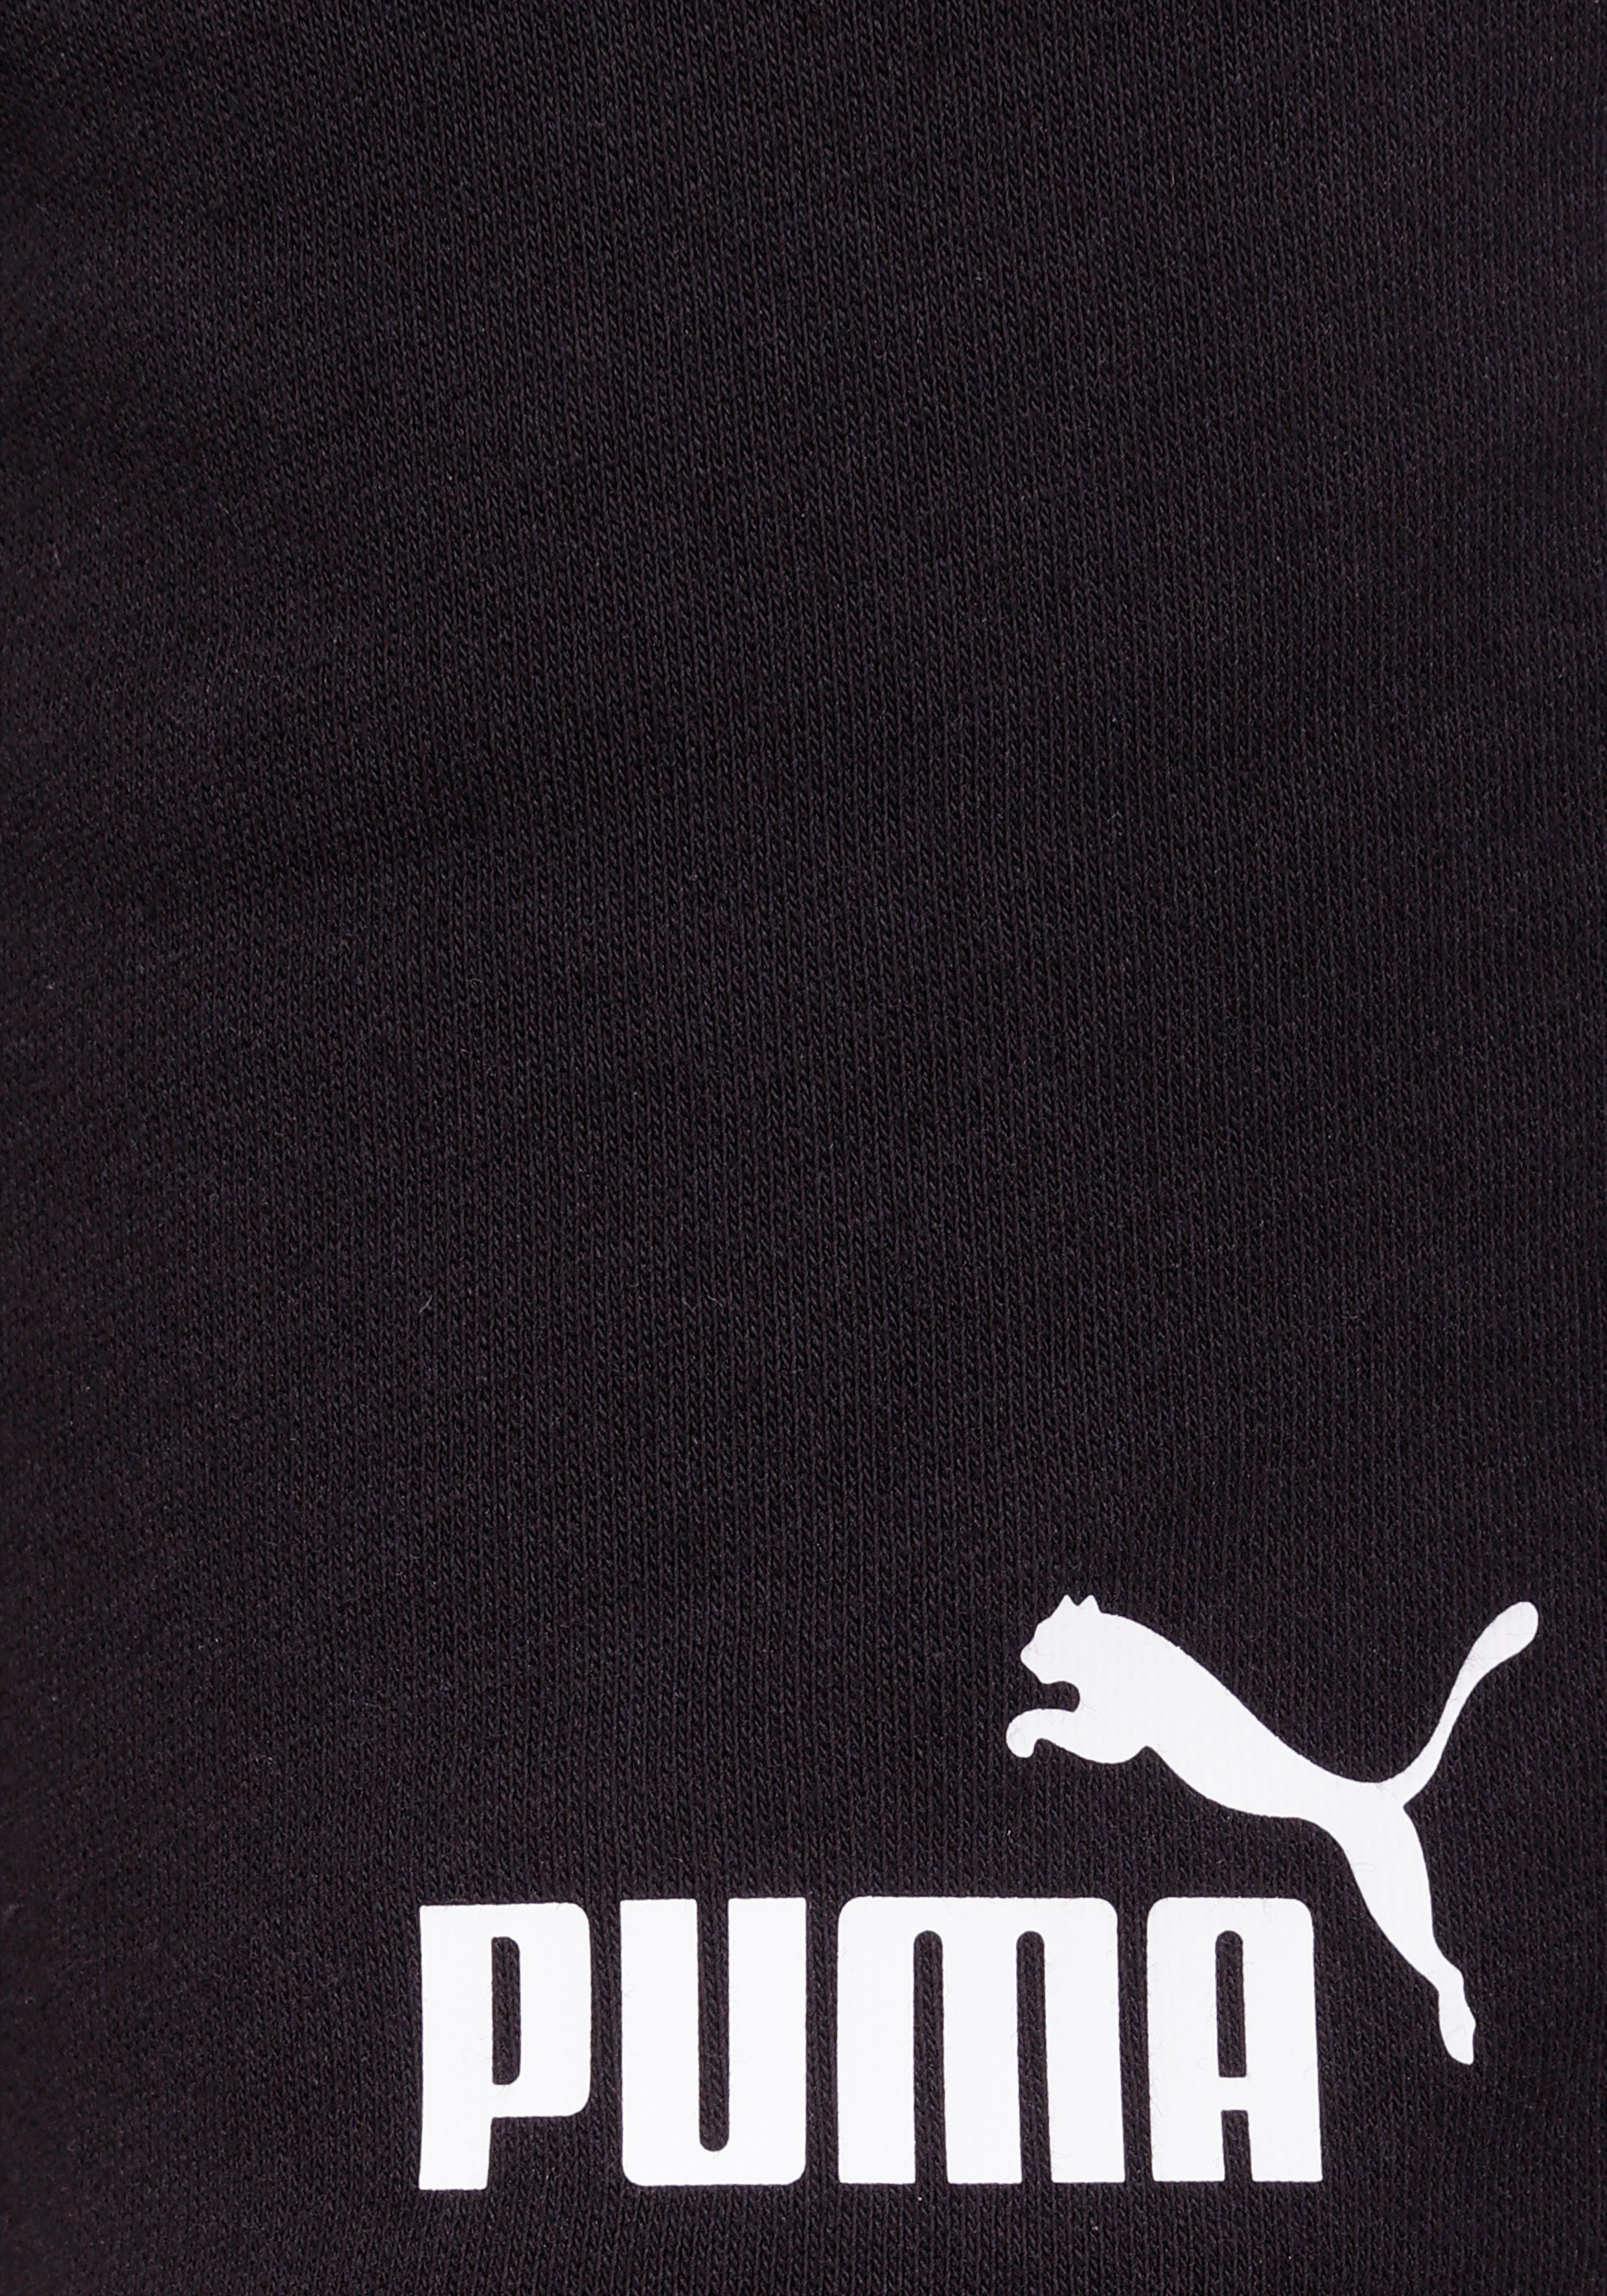 Black Shorts PUMA SHORTS Puma SWEAT ESS B